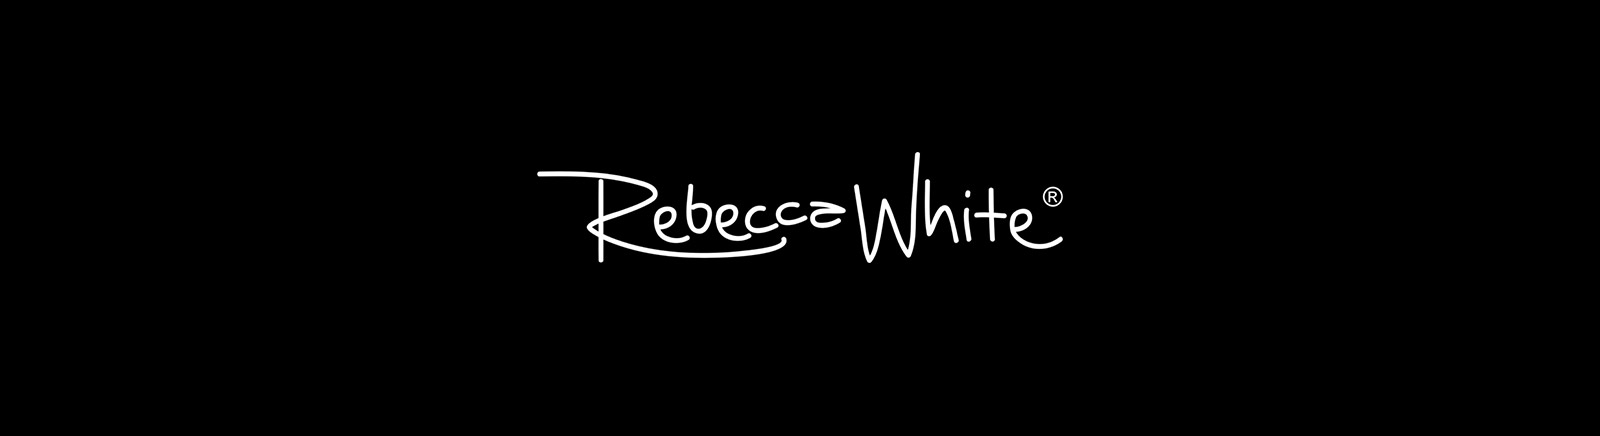 Rebecca White Schuhe online kaufen im GISY Schuhe Shop